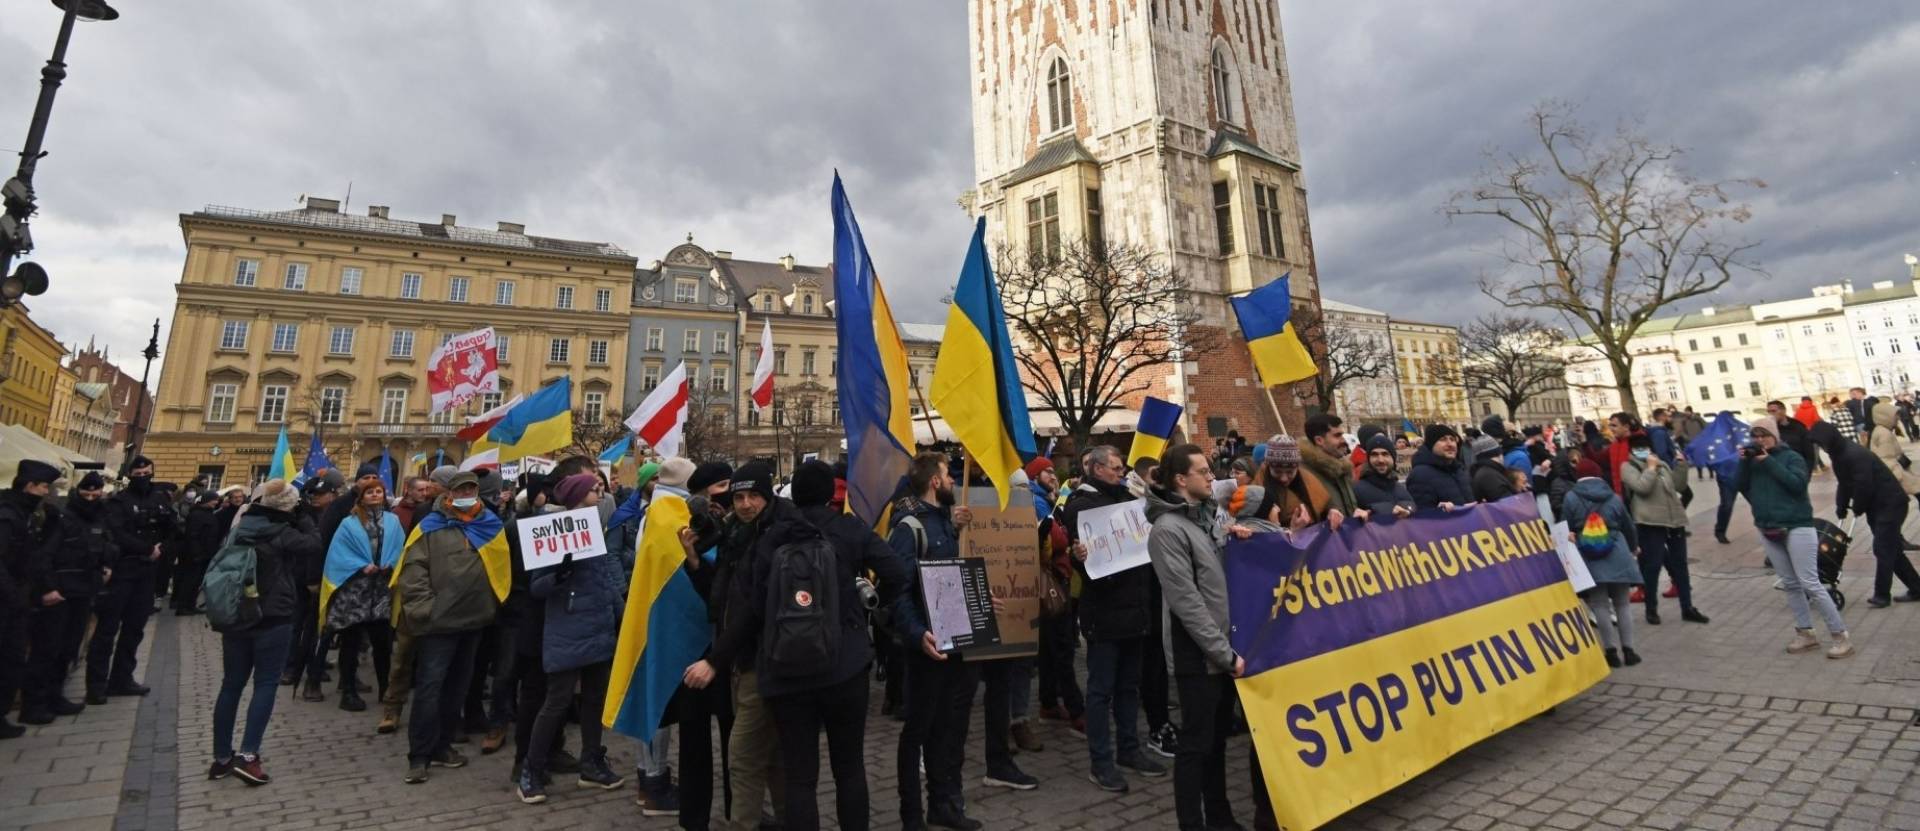 Łańcuch solidarności z Ukrainą! Niedziela 12:30 Rynek Główny